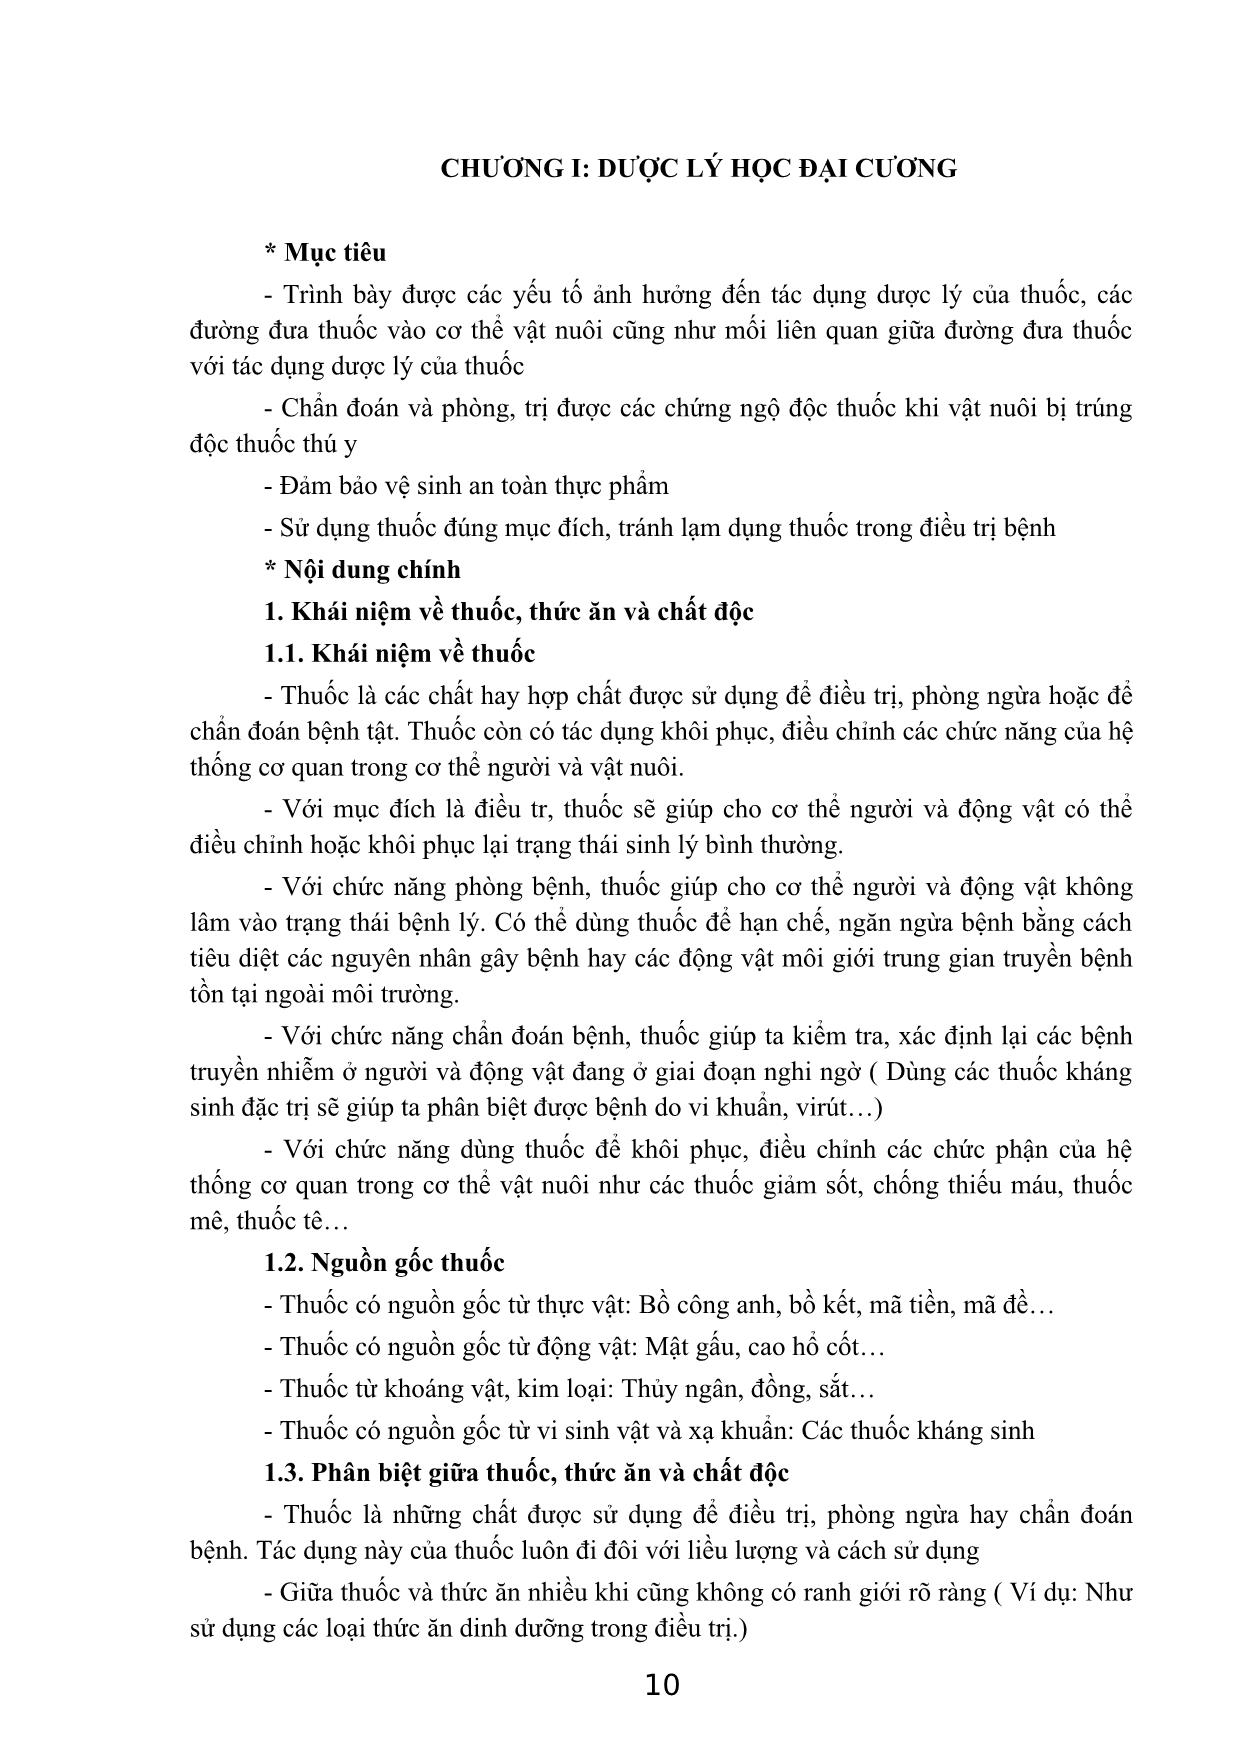 Giáo trình Dược lý thú y trang 10